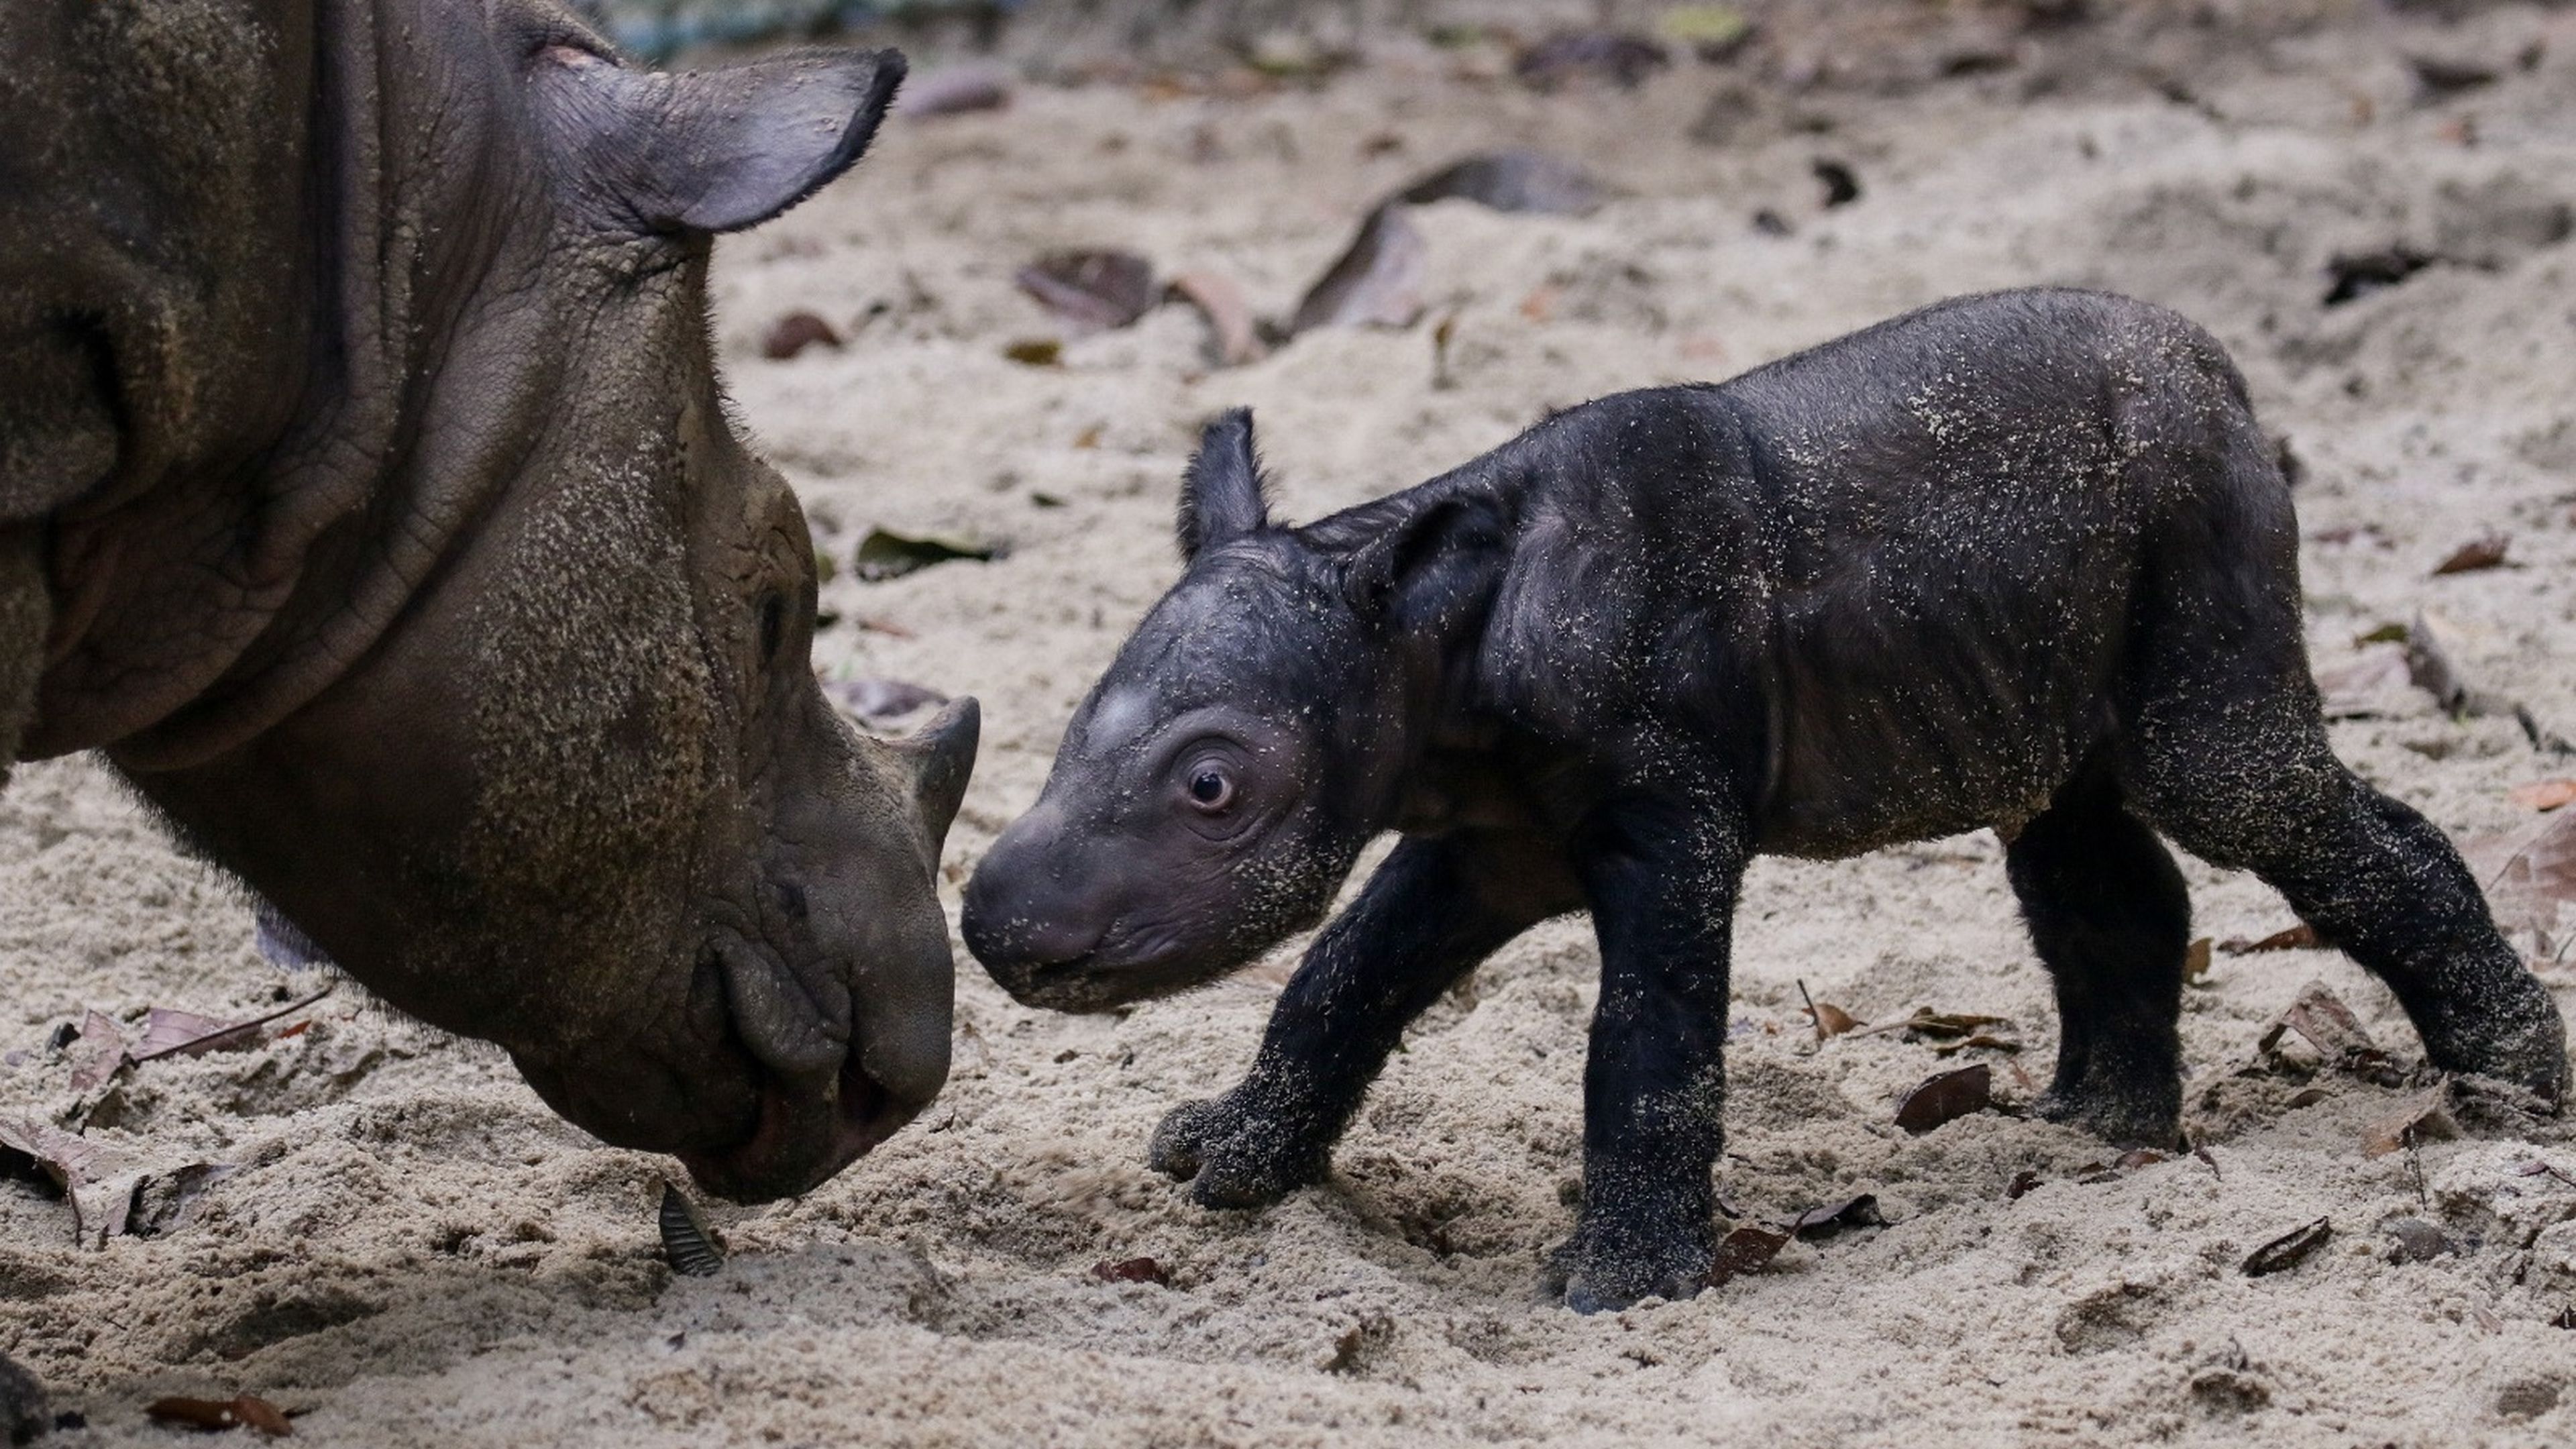 Toda Indonesia celebra la nueva cría de uno de los mamíferos más raros del mundo